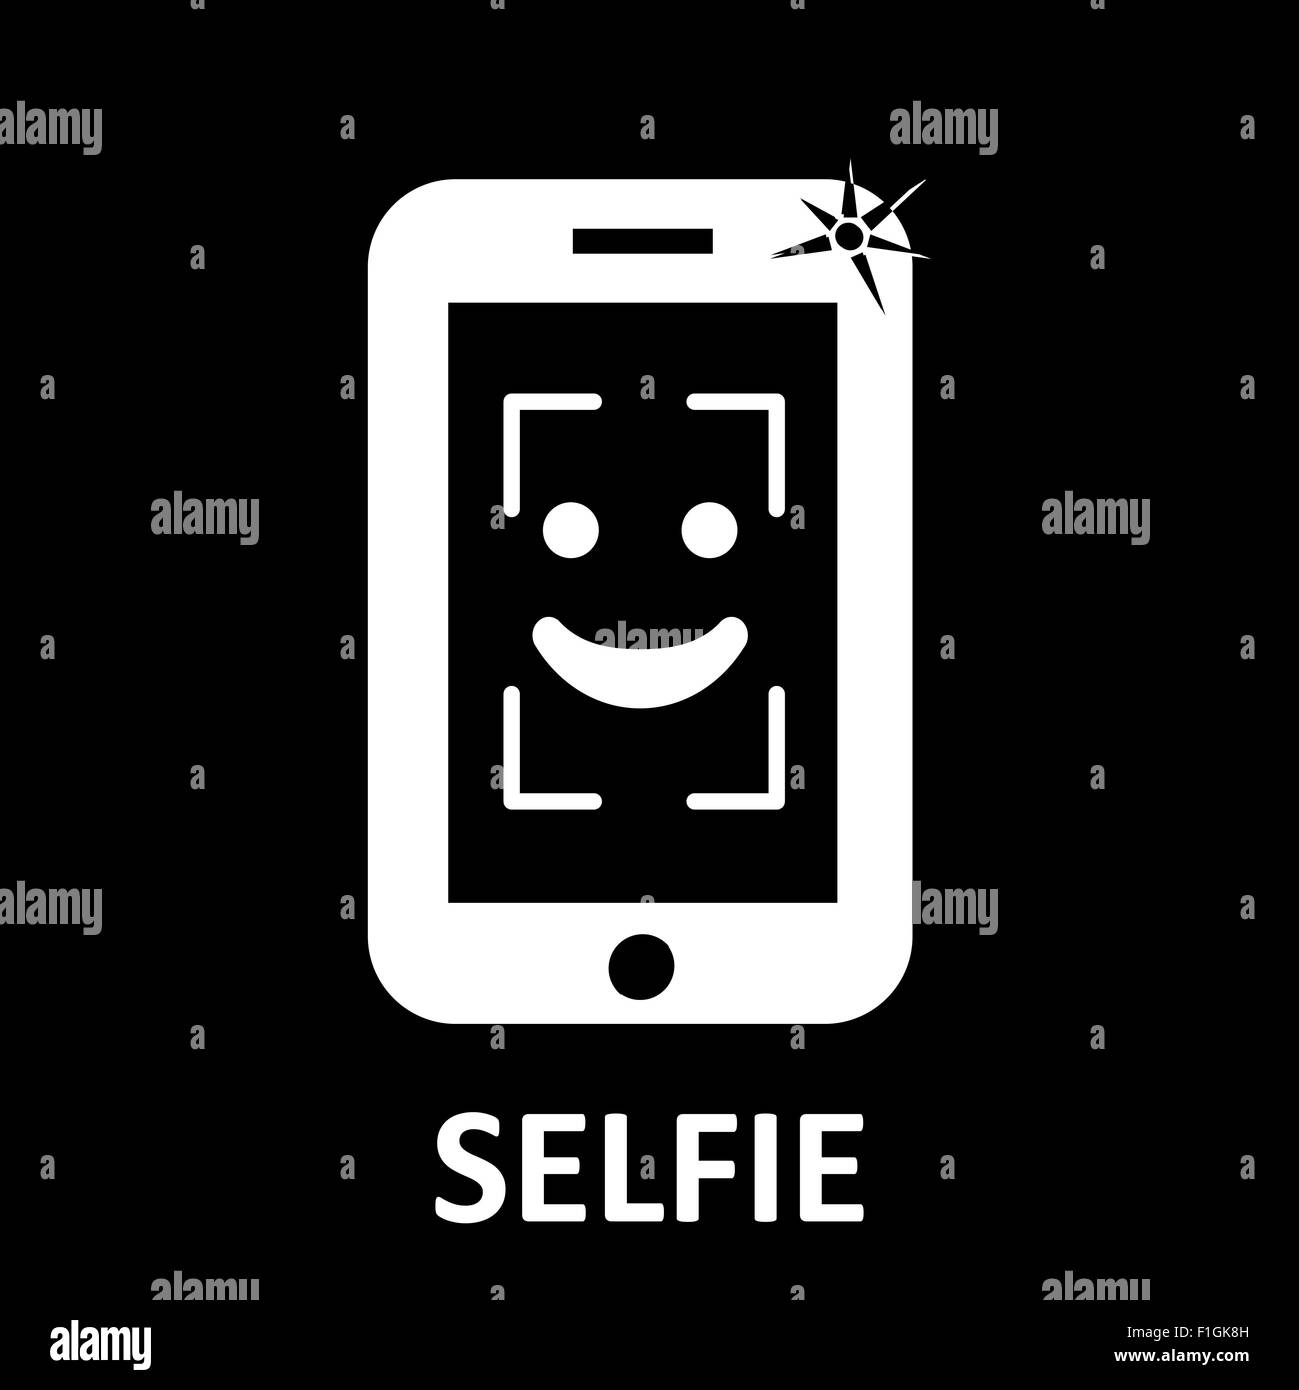 Selfie symbol Stock Photo